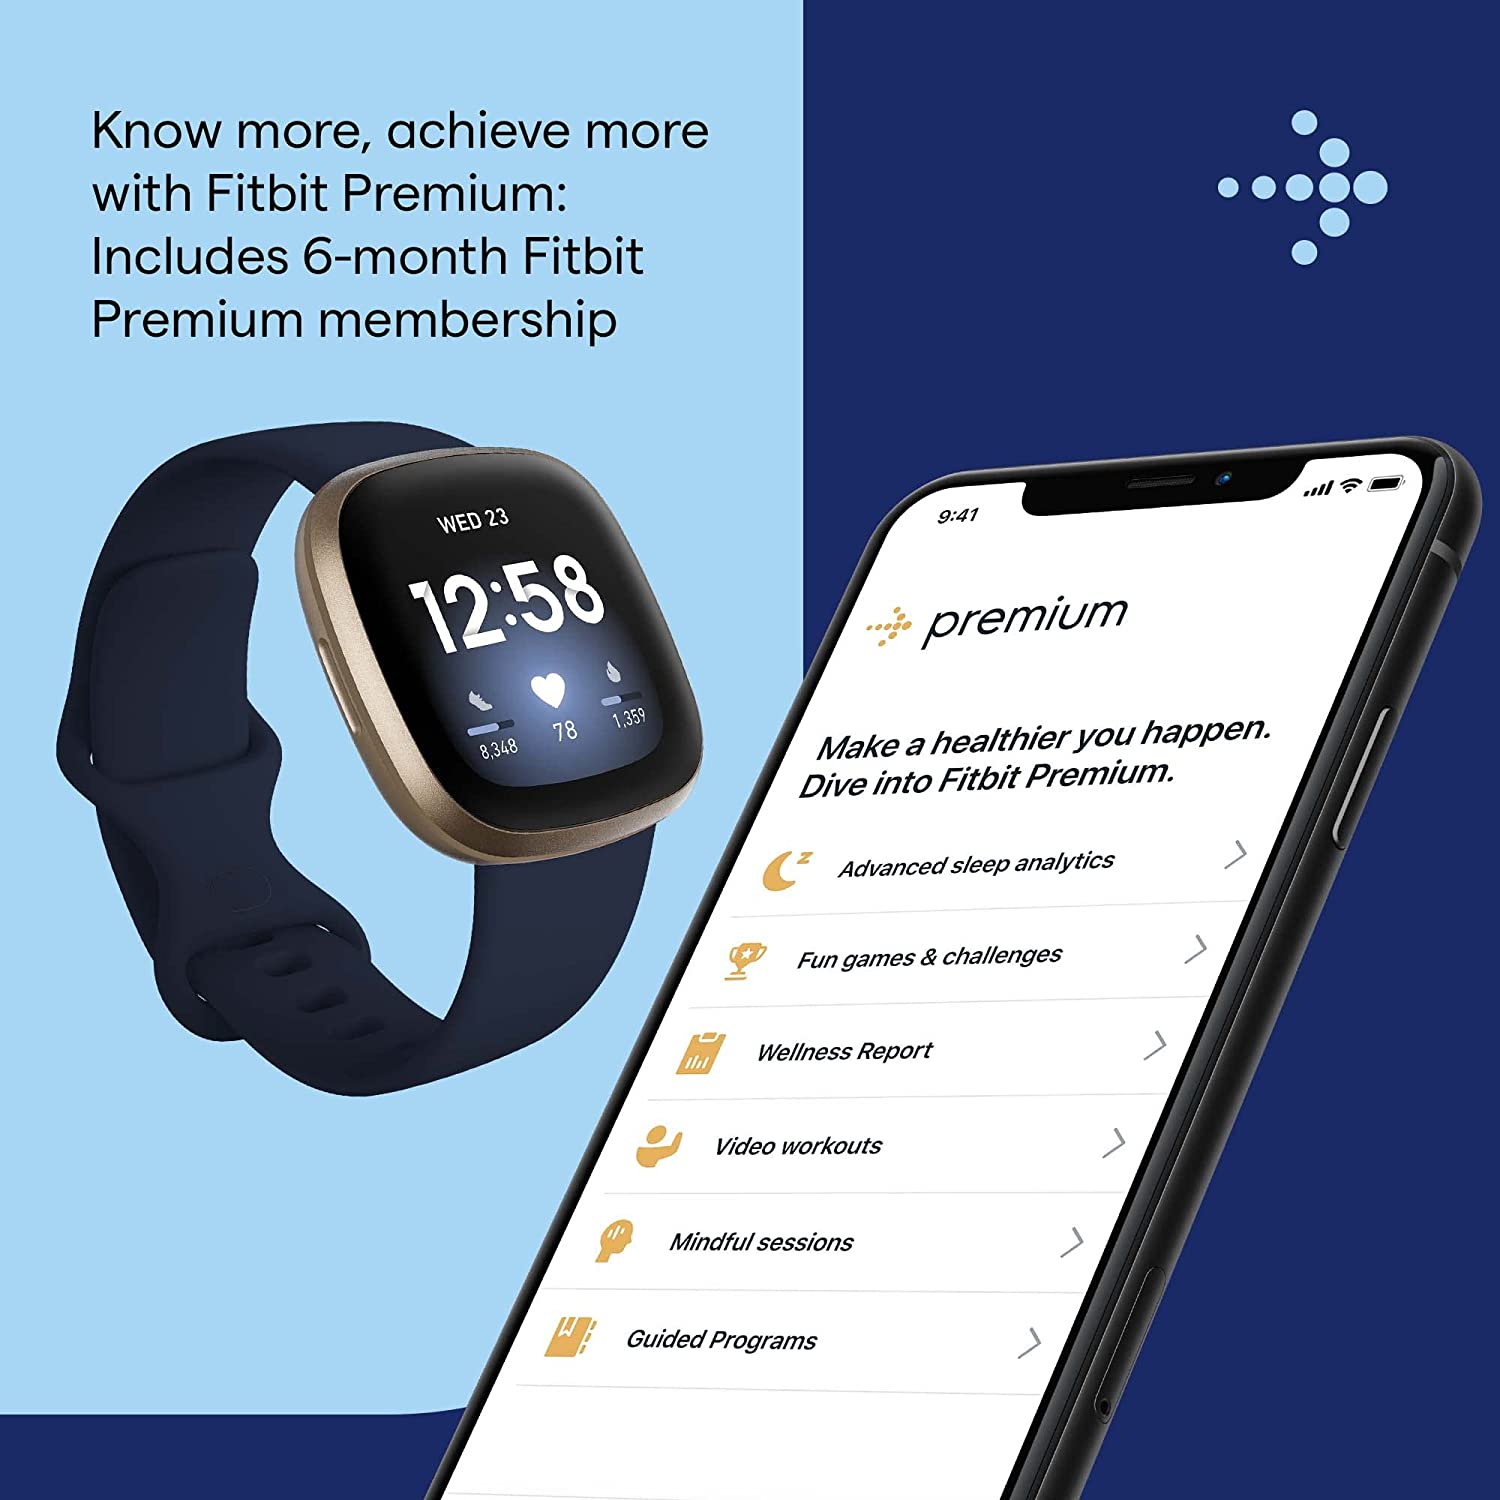 Đồng hồ thông minh Fitbit Versa 3